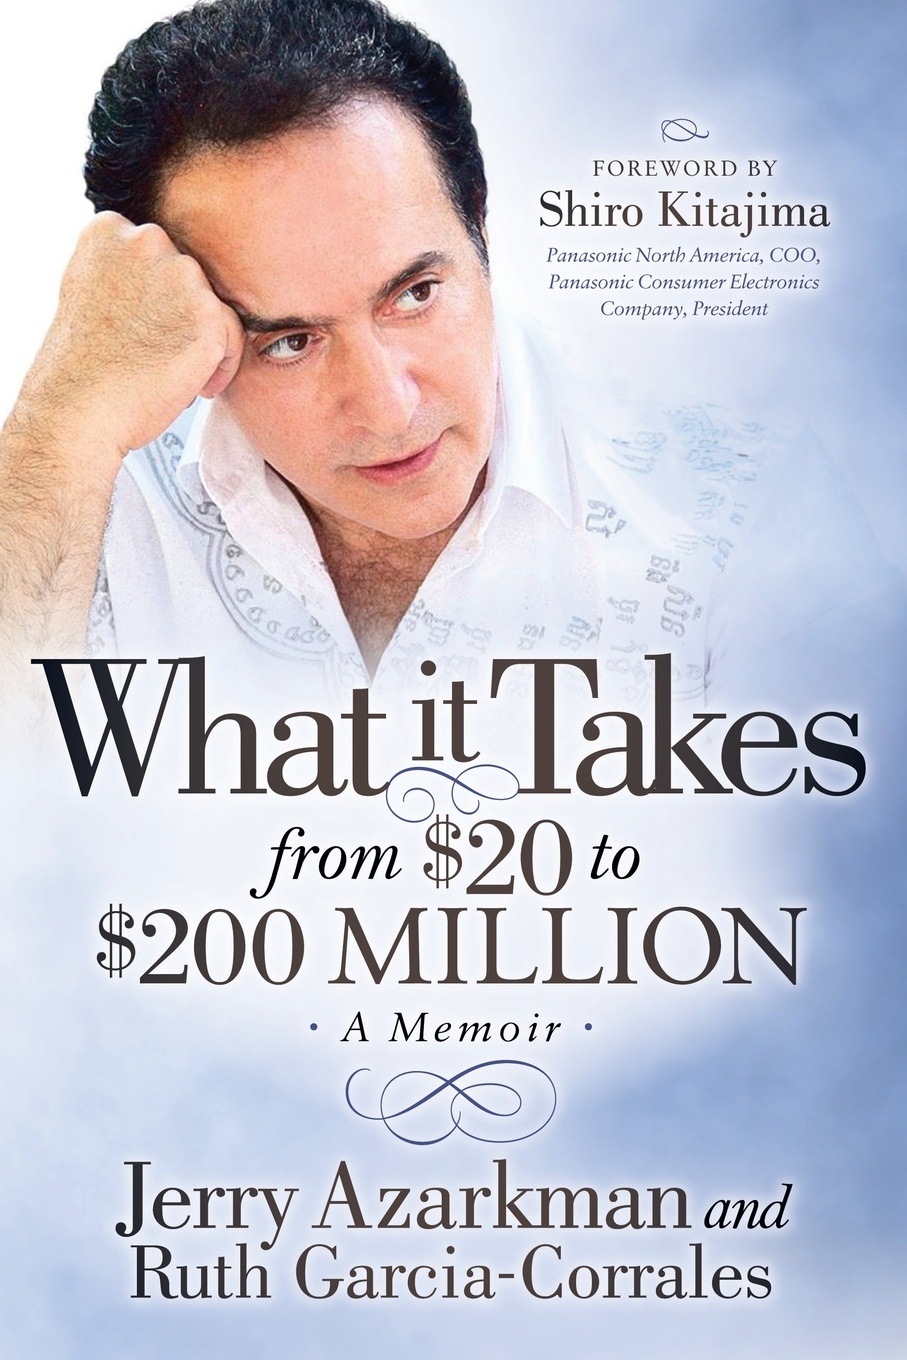 What It Takes from .20 to .200 Million. Jerry Azarkmanas Memoir